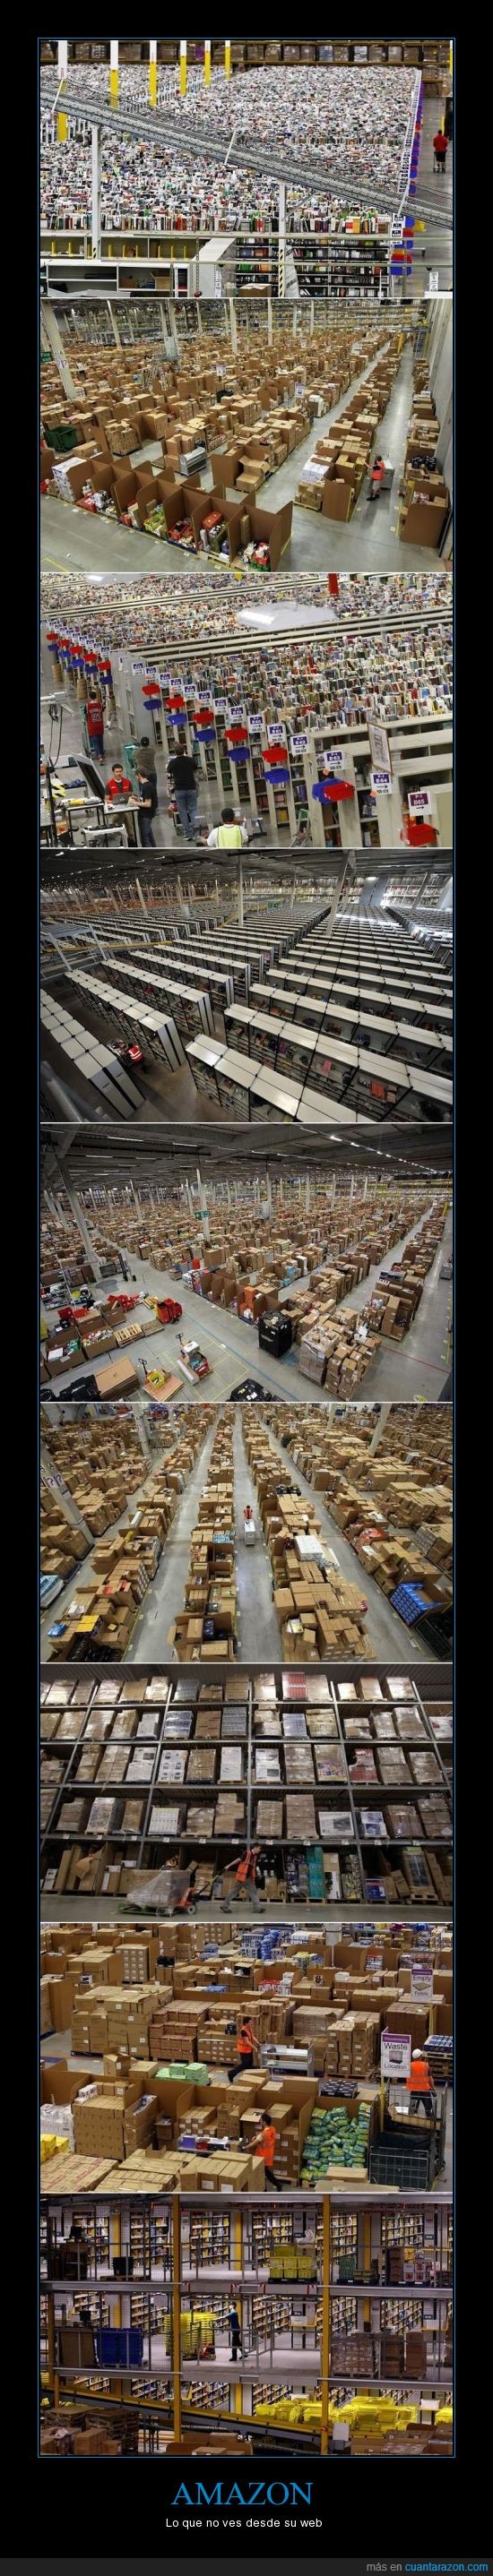 Amazon,Jeff,productos,una locura,es enorme